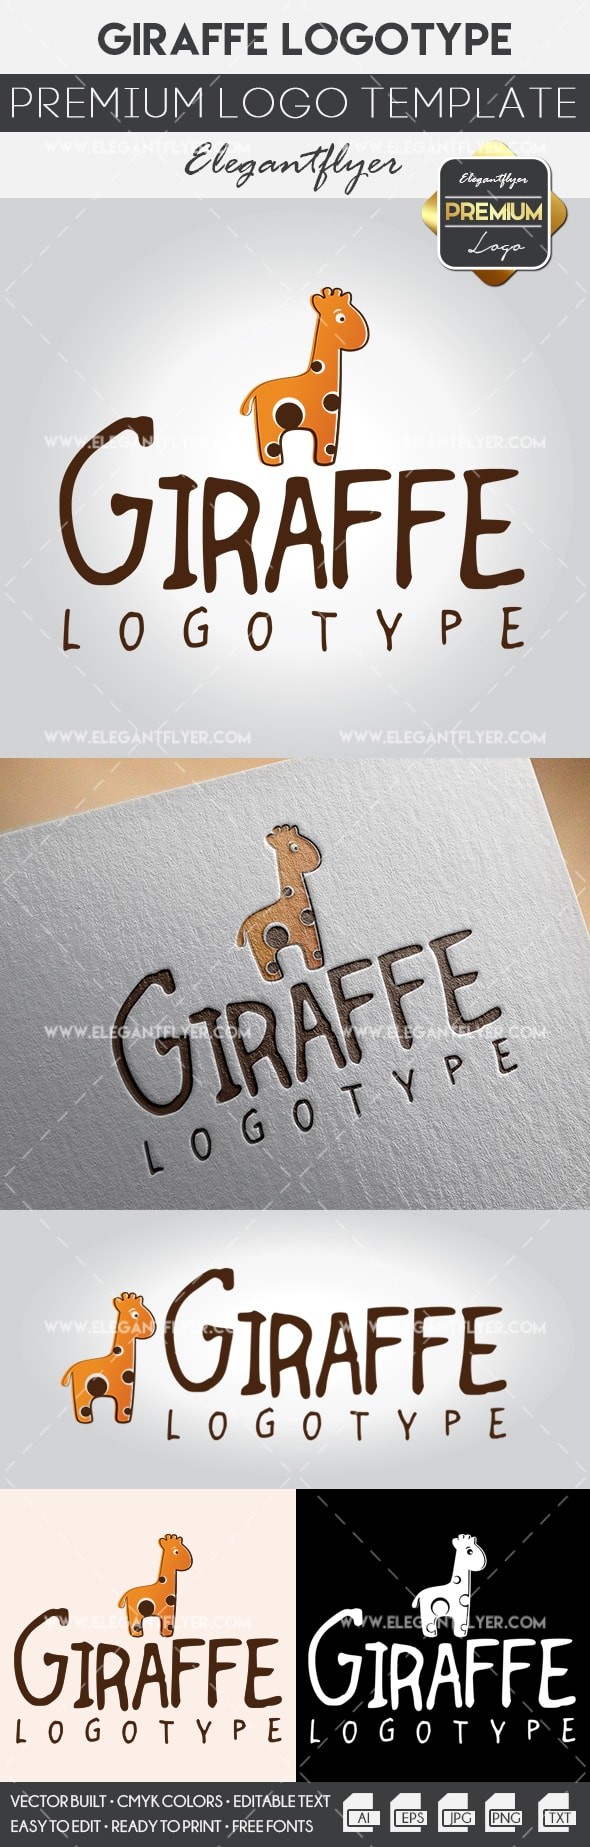 Modelo de girafa dos desenhos animados by ElegantFlyer